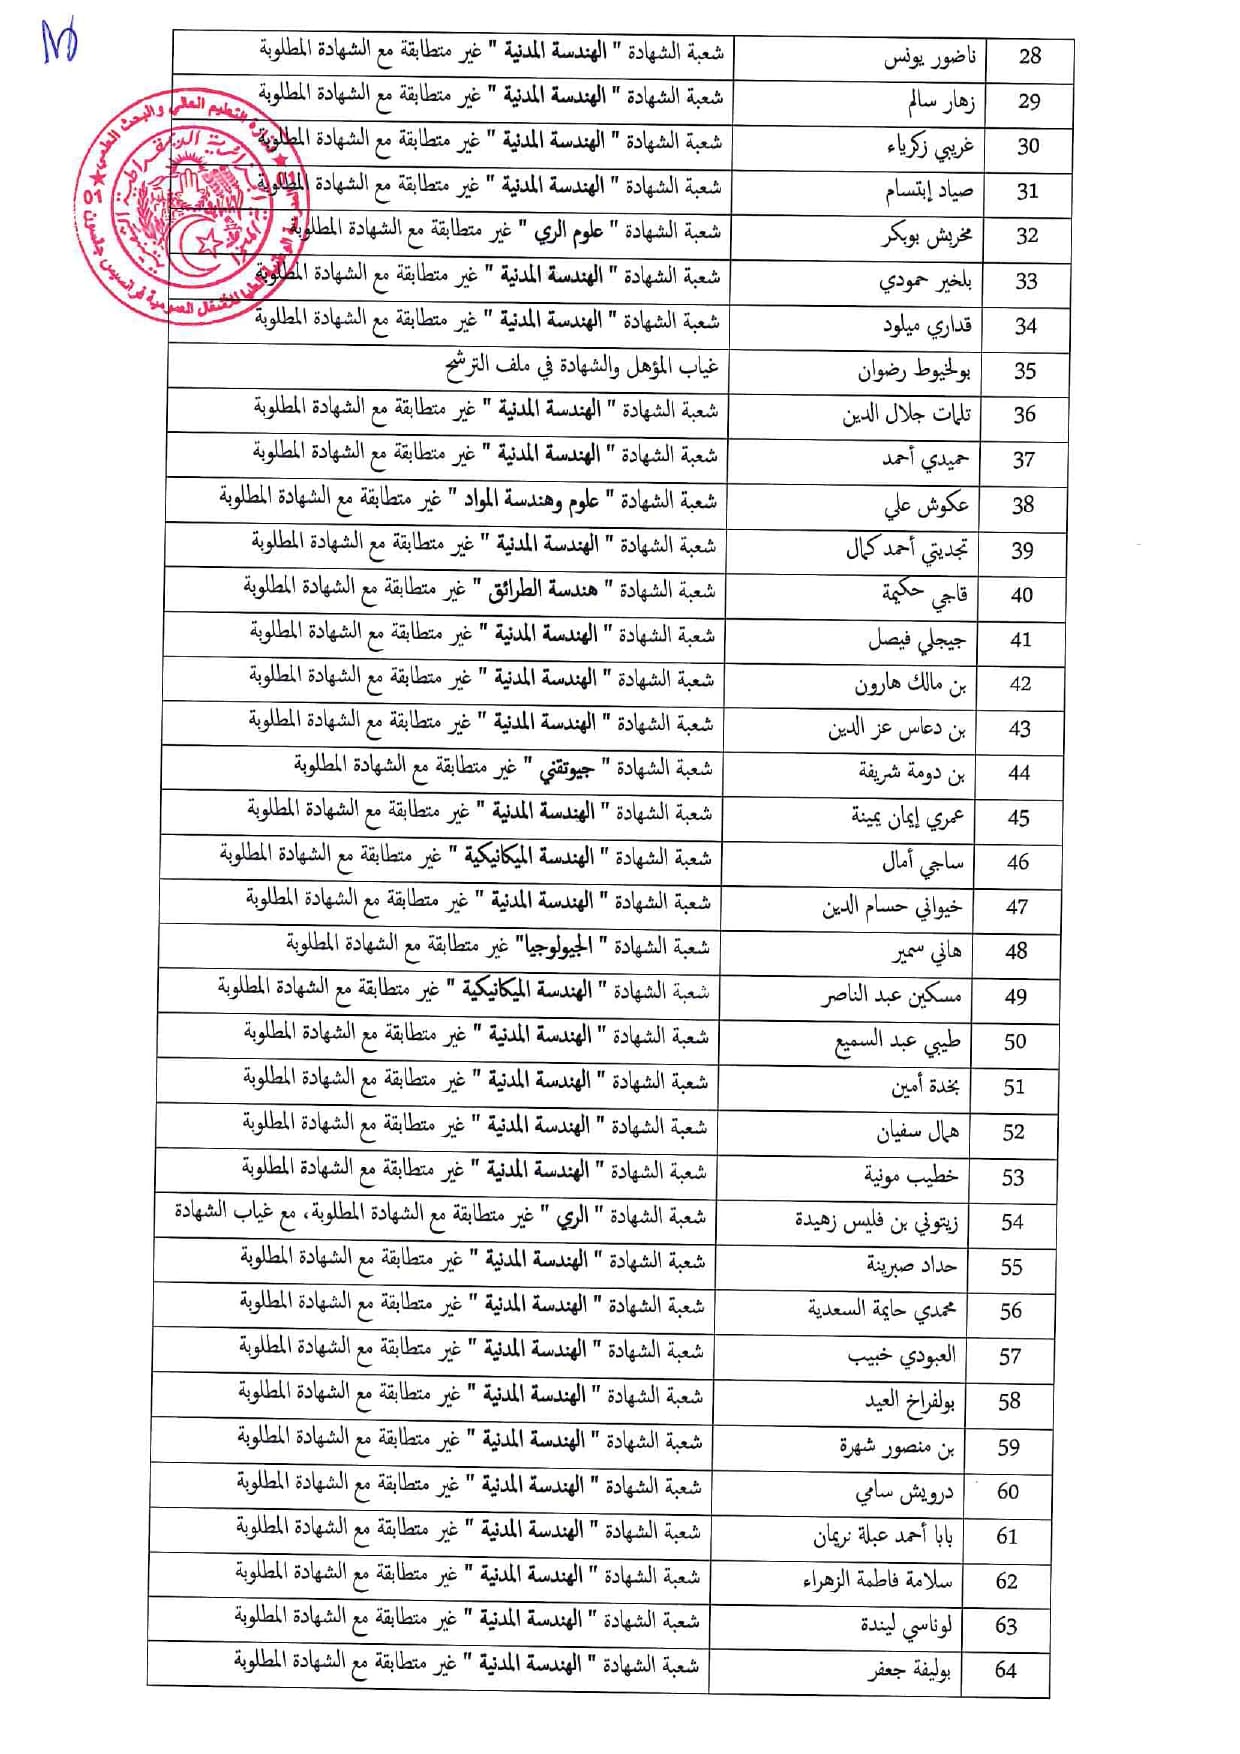 قائمة المترشحين المرفوضين page 0003